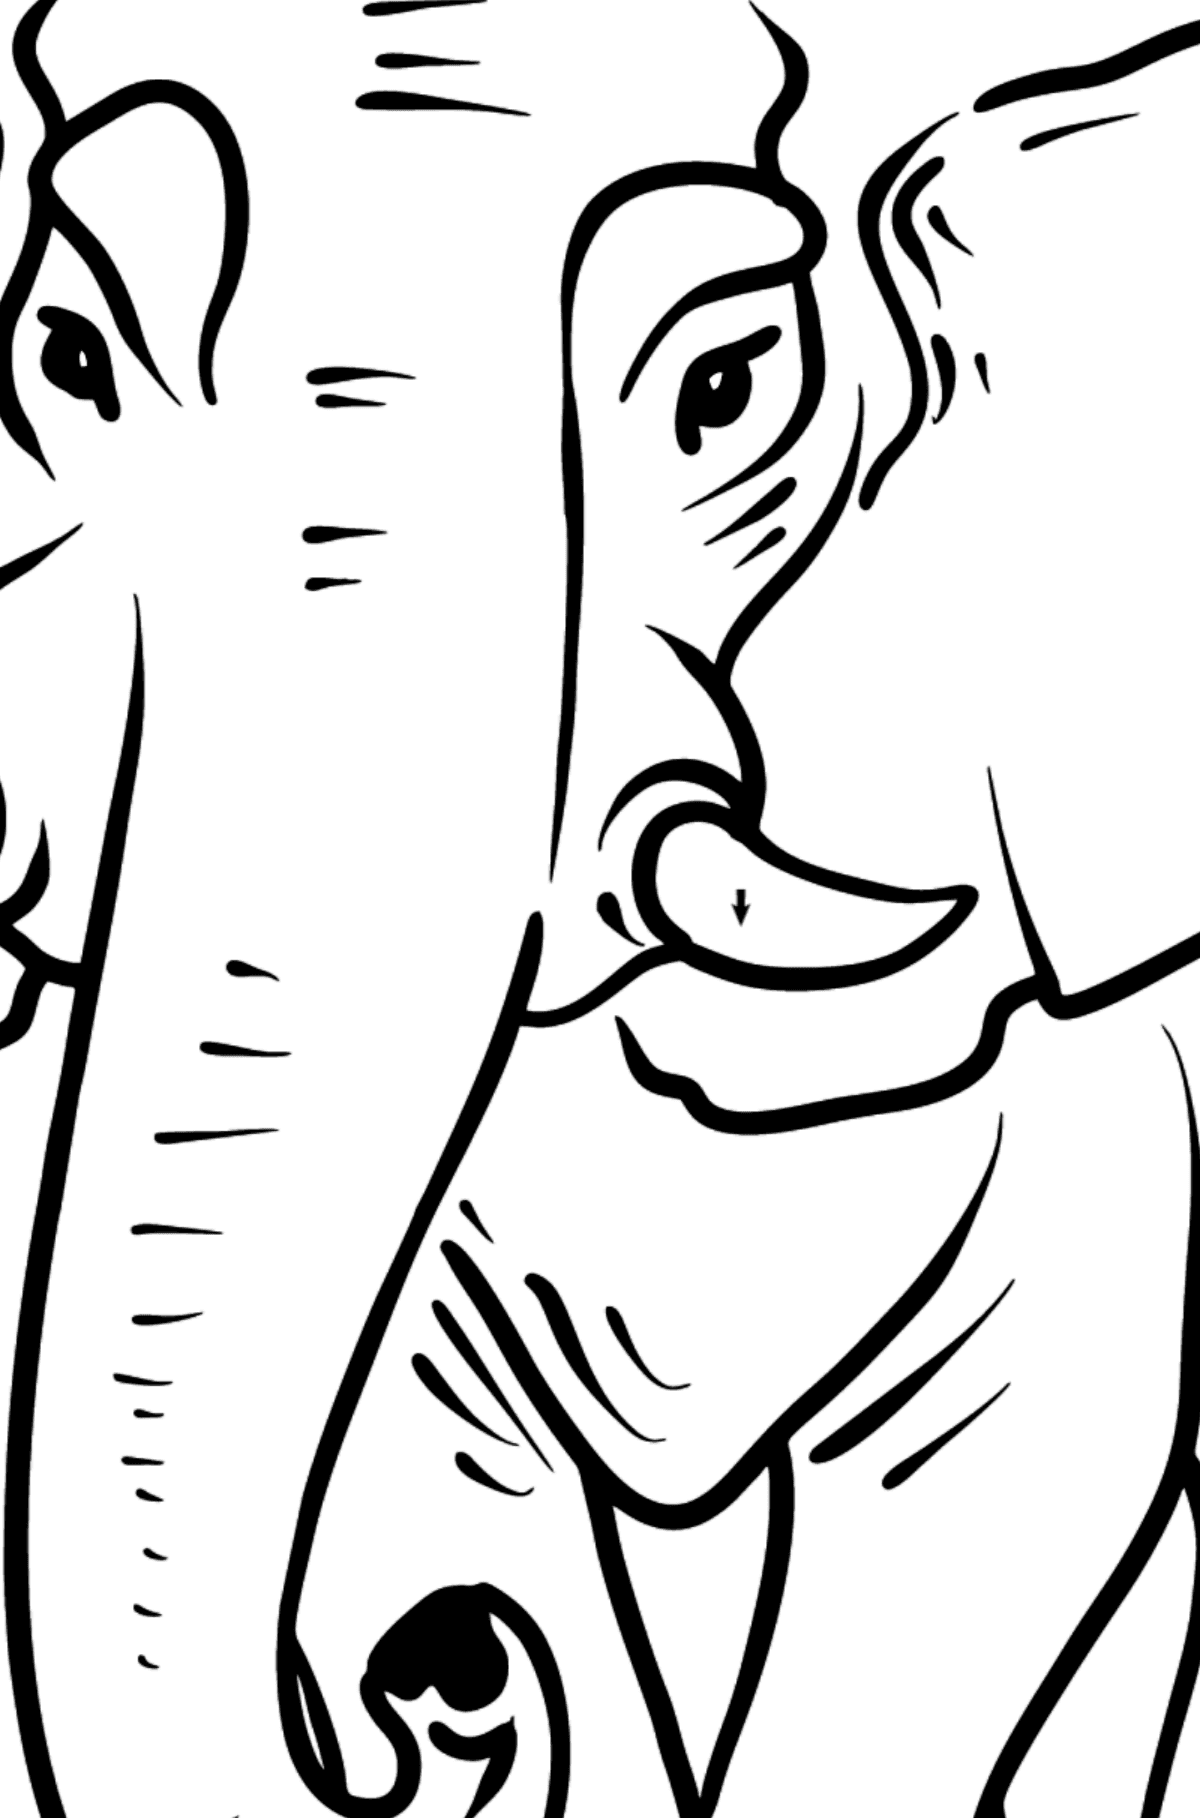 Dibujo de elefante para colorear - Colorear por Símbolos para Niños